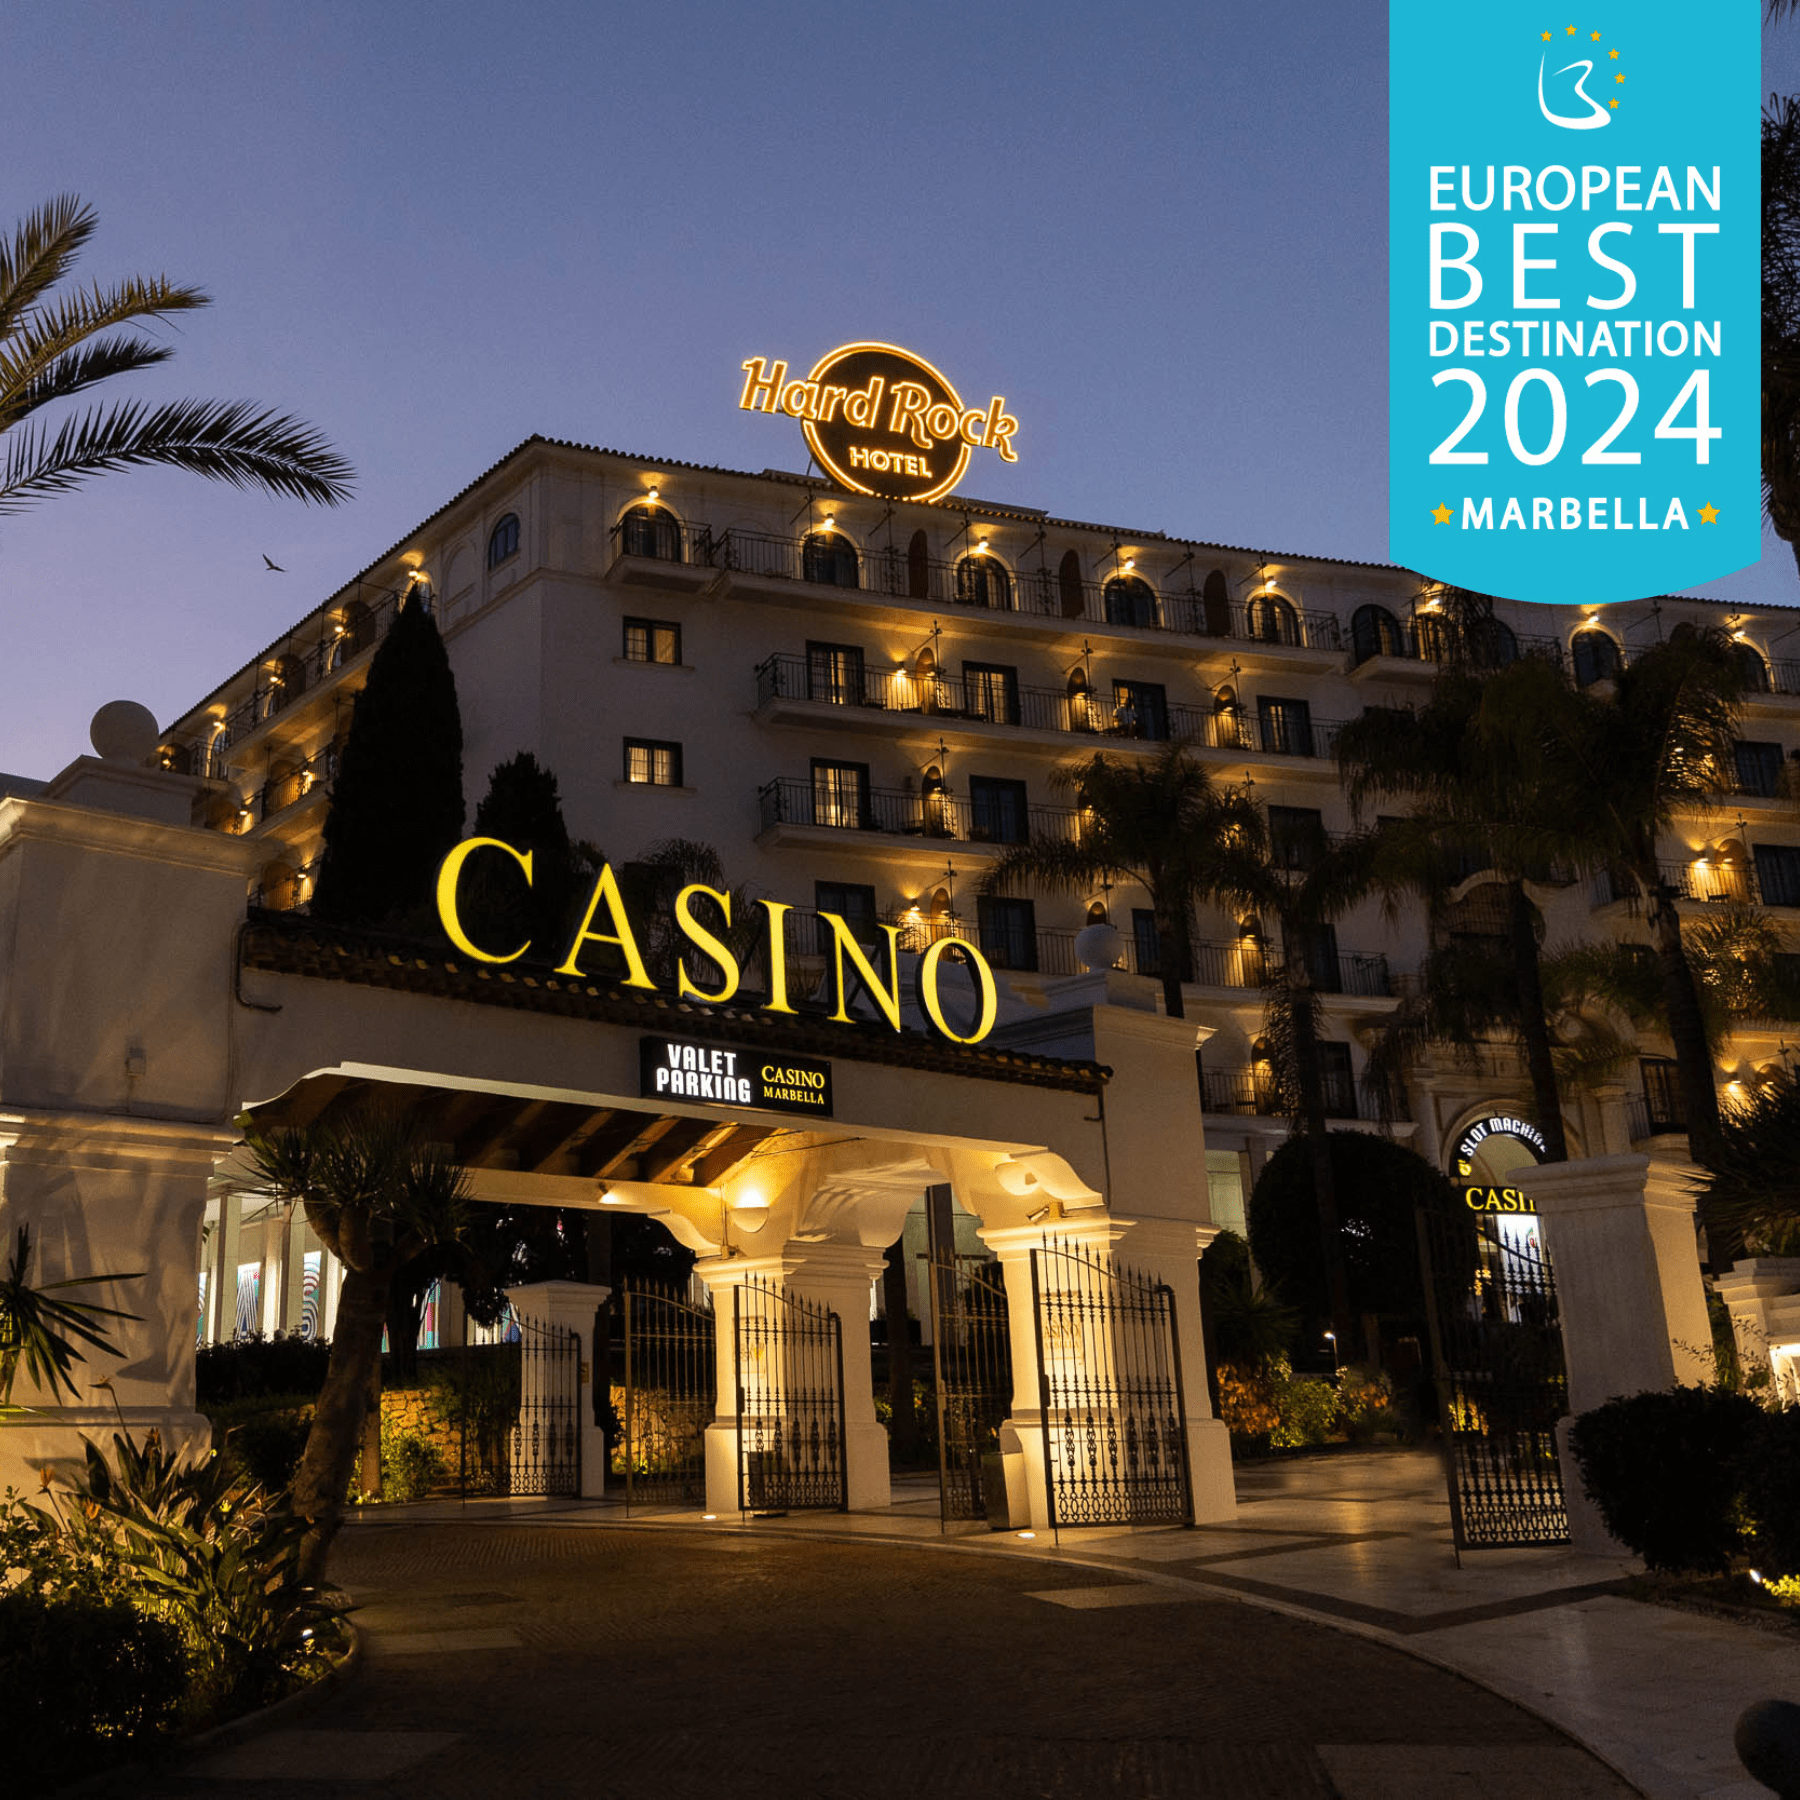 Marbella elegida Mejor Destino Europeo 2024 gracias    a la calidad y excelencia de empresas como Casino Marbella